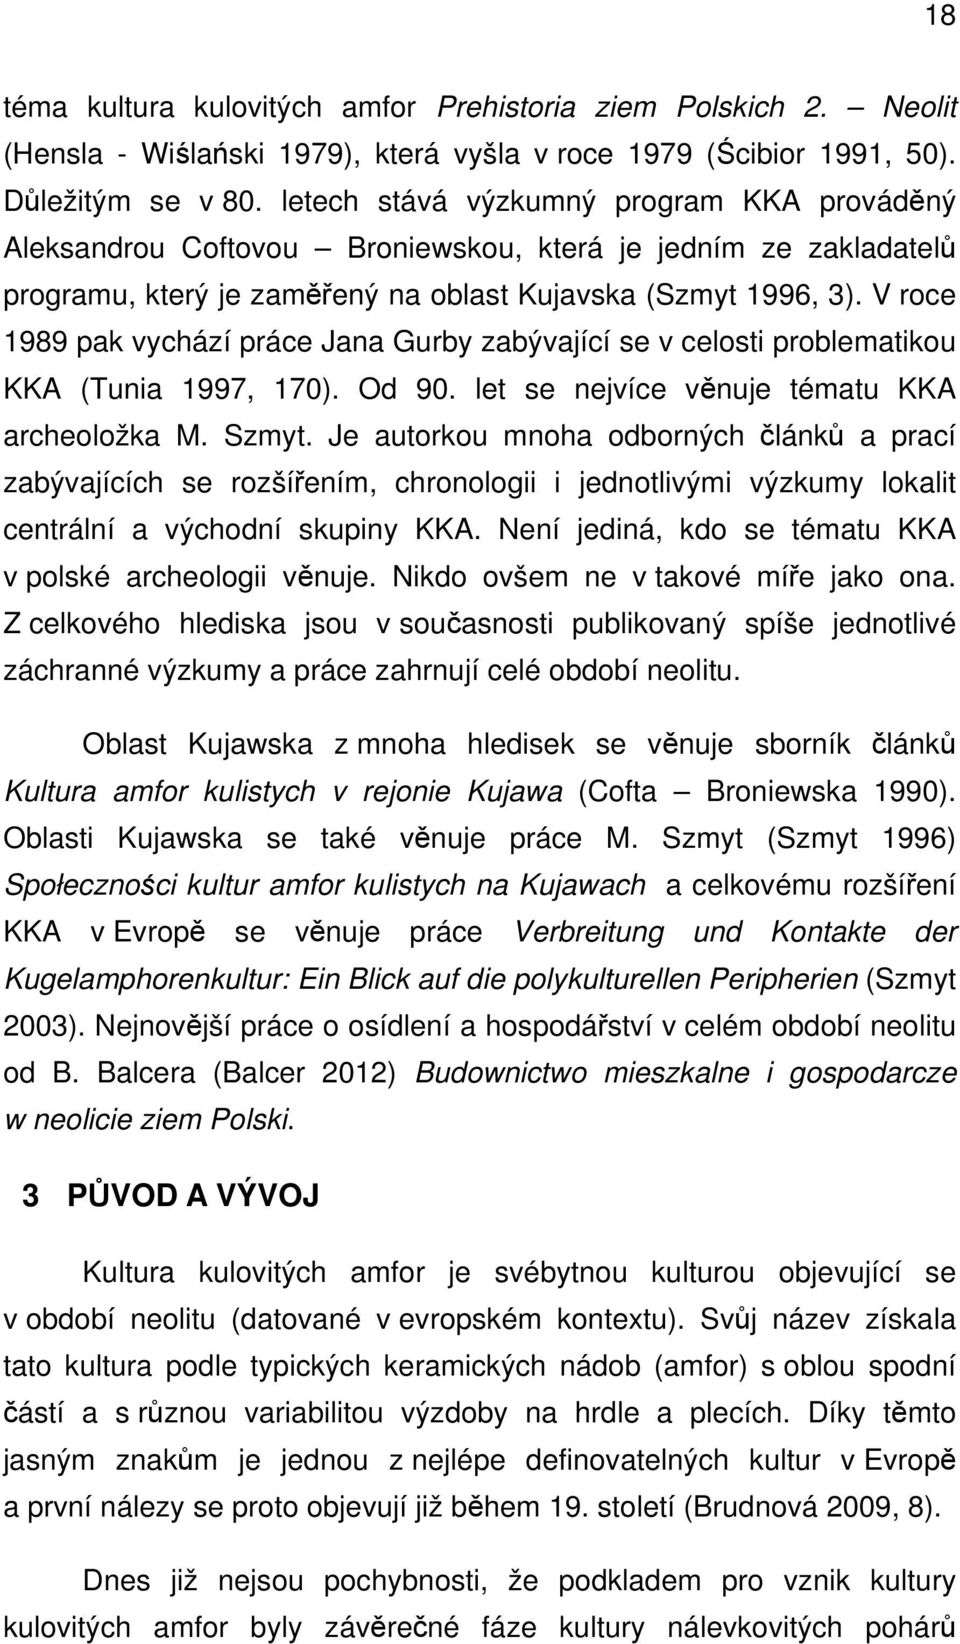 V roce 1989 pak vychází práce Jana Gurby zabývající se v celosti problematikou KKA (Tunia 1997, 170). Od 90. let se nejvíce věnuje tématu KKA archeoložka M. Szmyt.